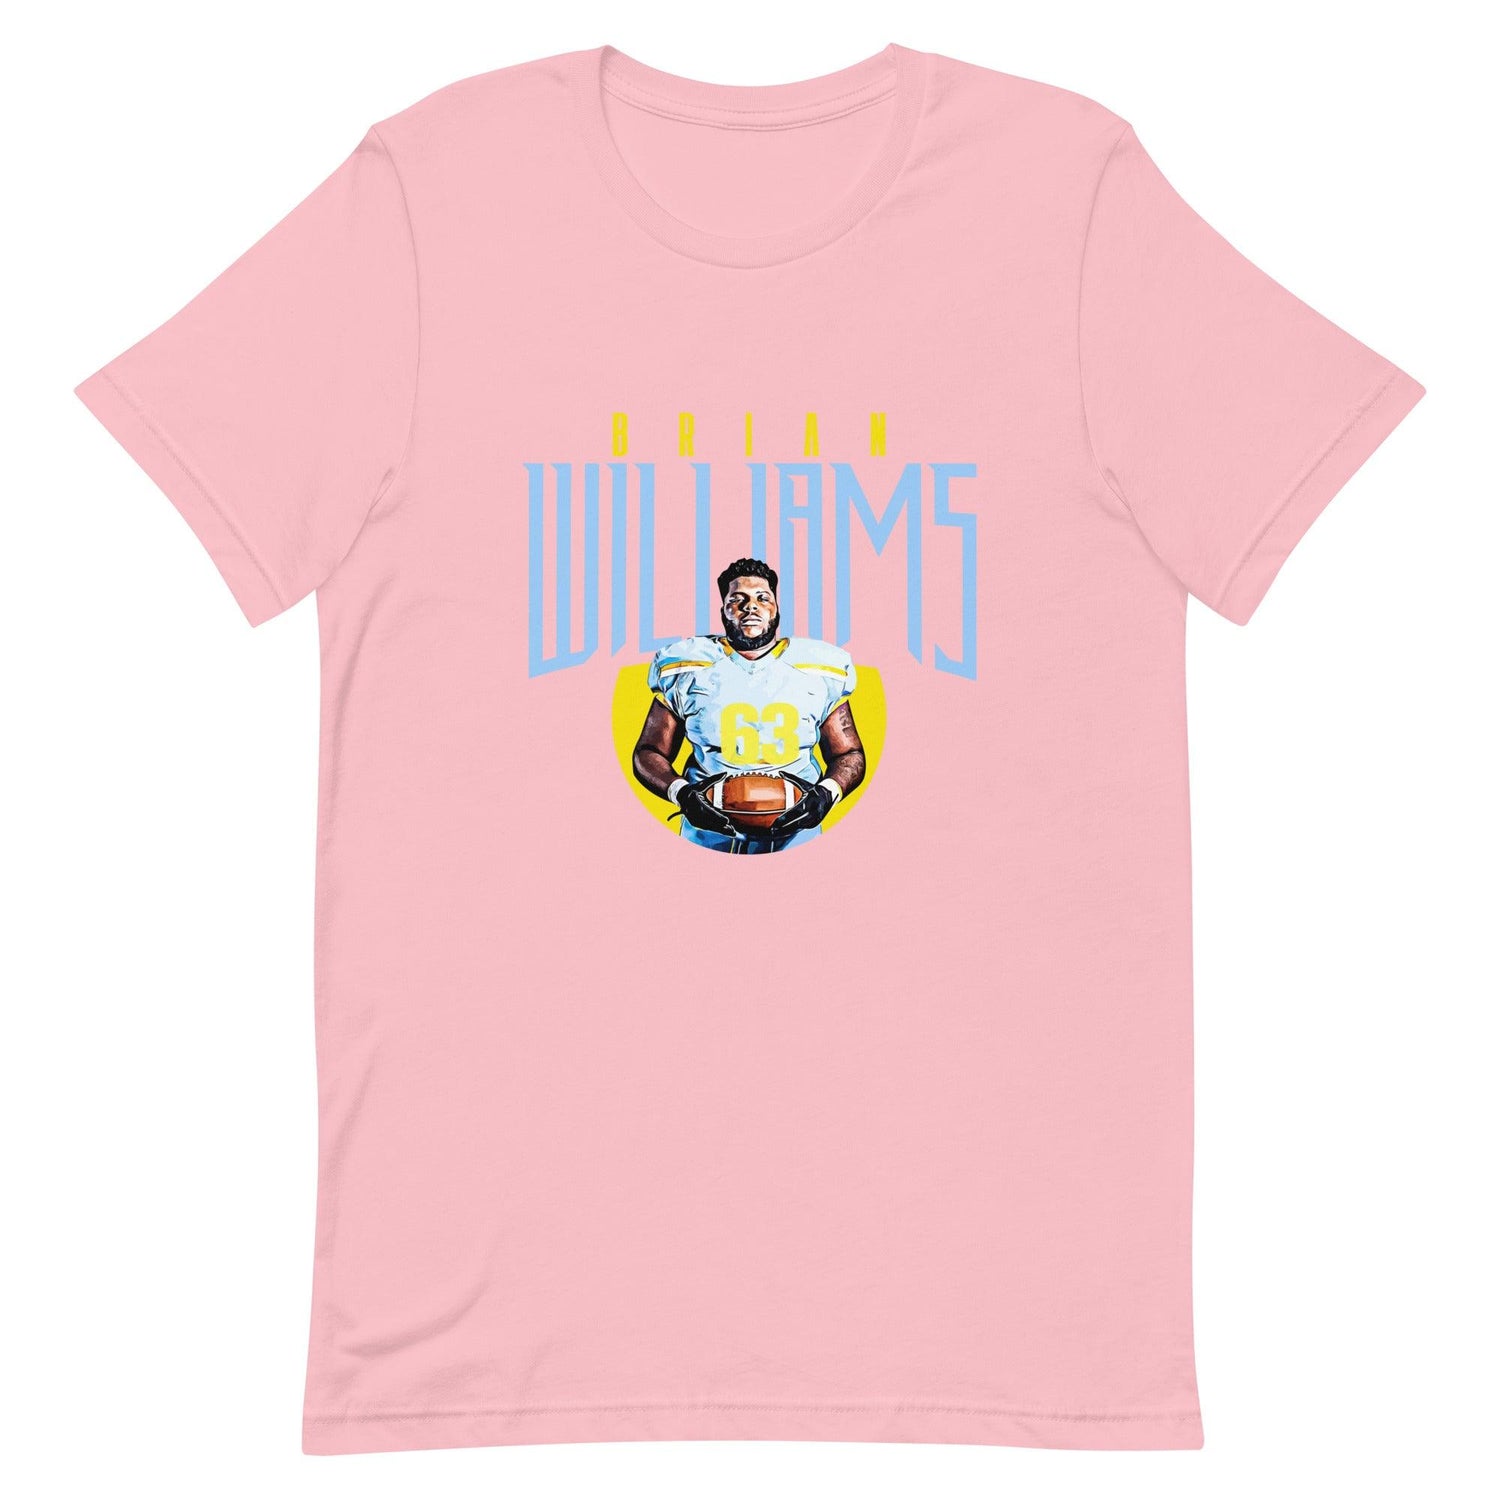 Brian Williams "Gameday" t-shirt - Fan Arch